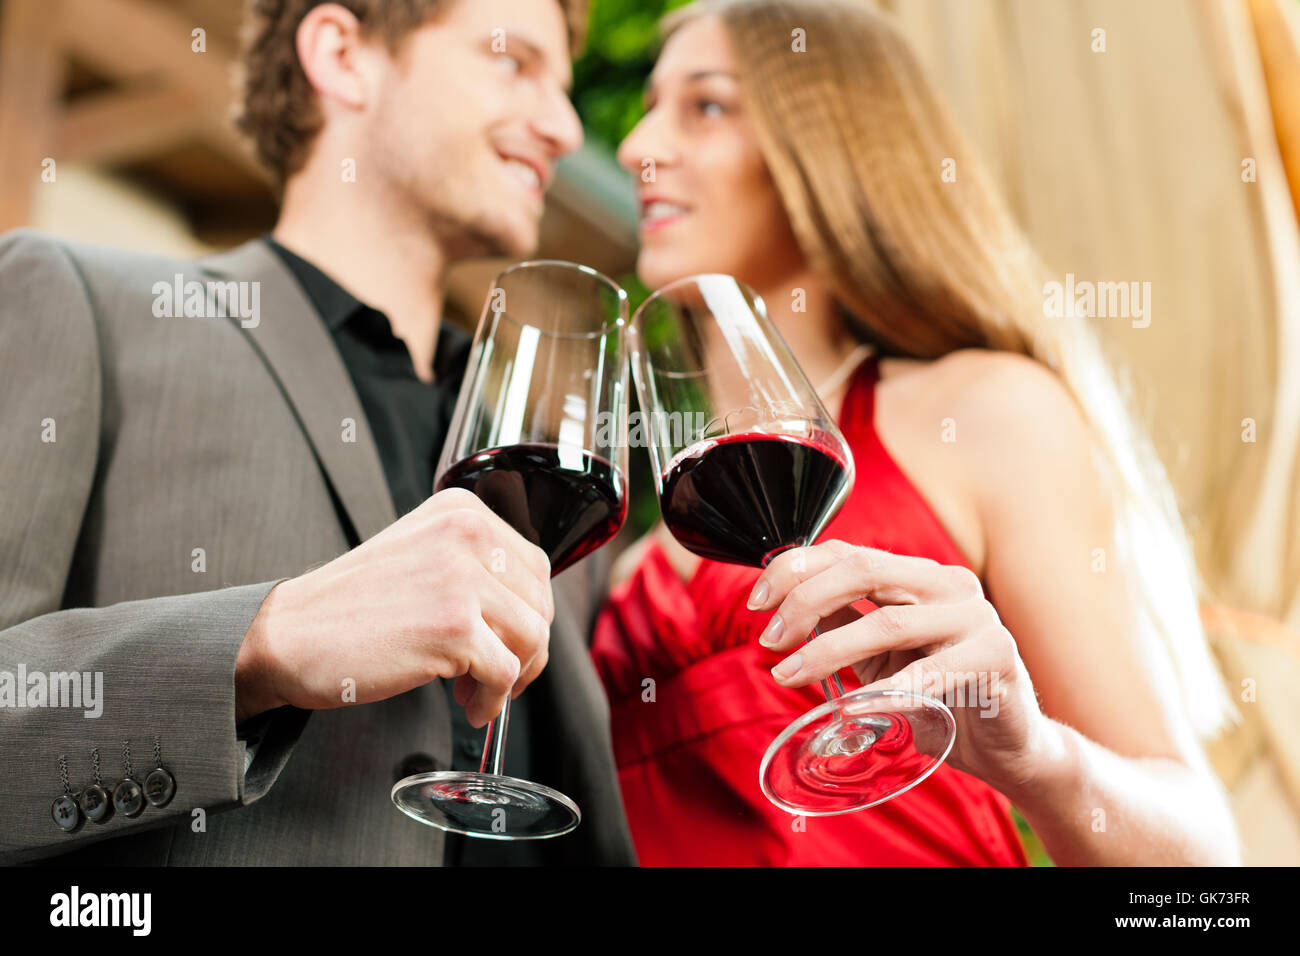 wine tasting in restaurant Stock Photo